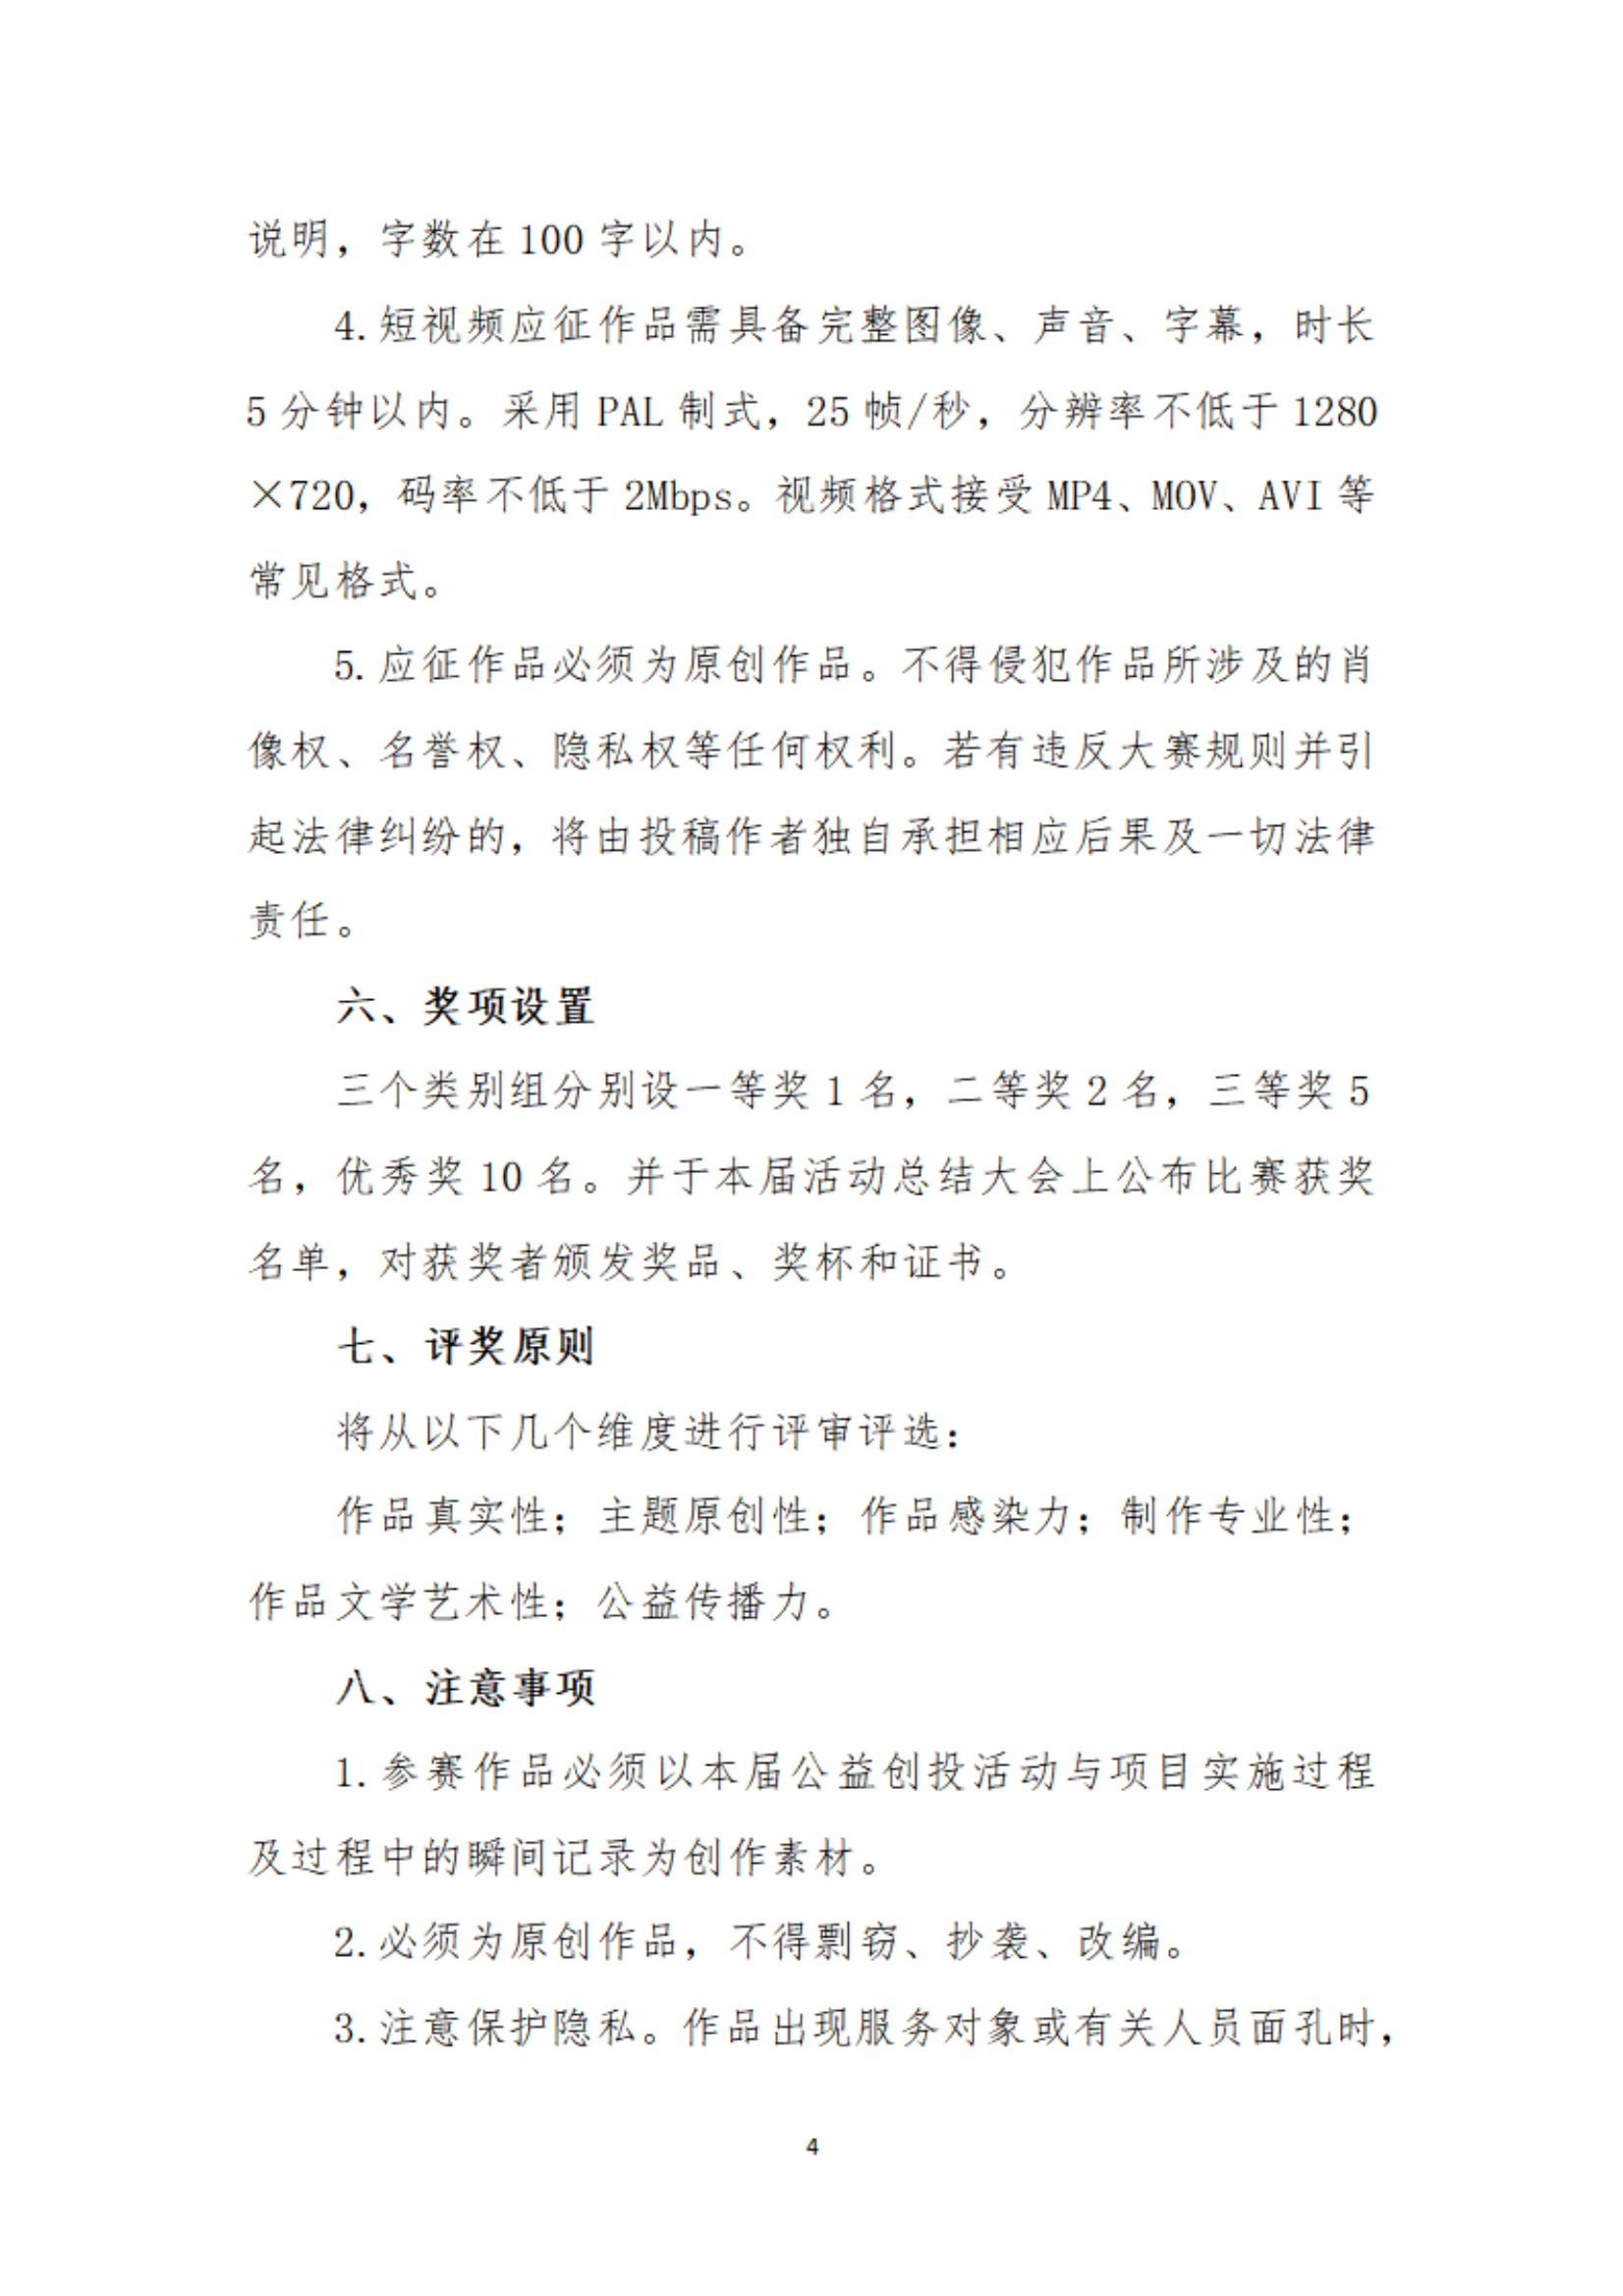 【以此為(wèi)准】关于举办广州市社会组织公益创投活动“公益创投 暖席广州”主题征文(wén)和摄影、短视频大赛的通知_03.png